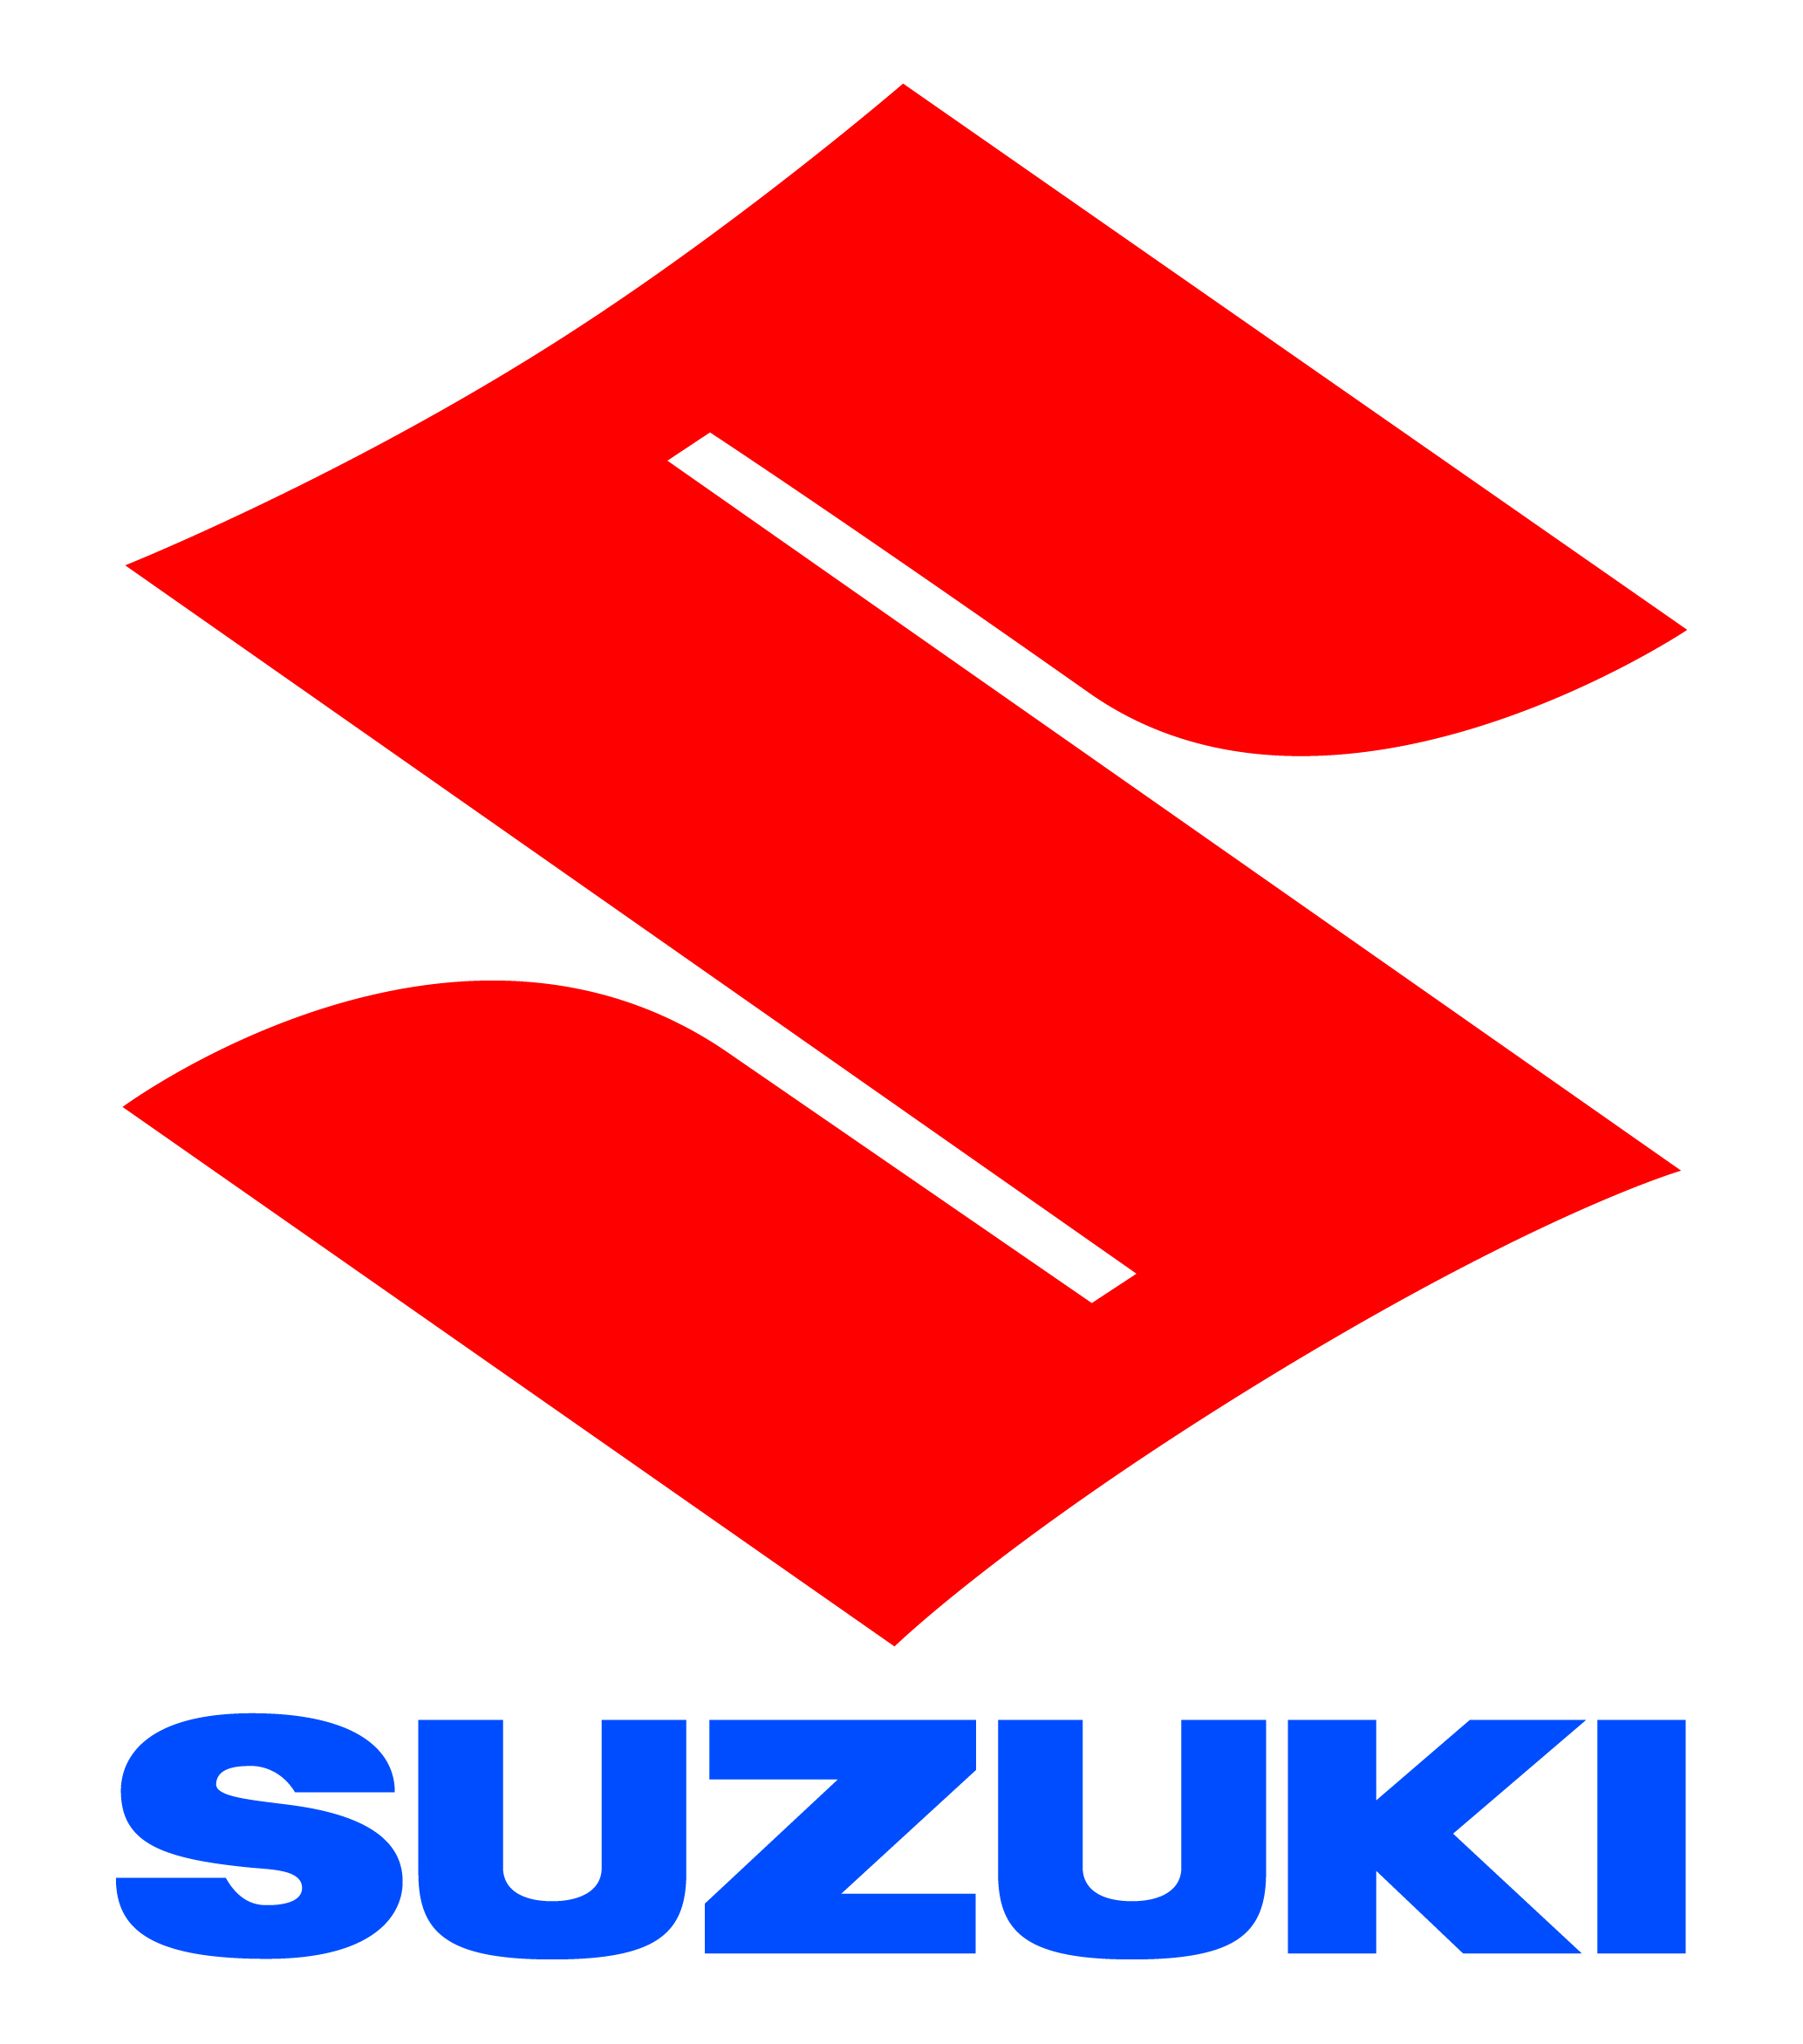 suzuki bnt ซูซูกิ บีเอ็นที